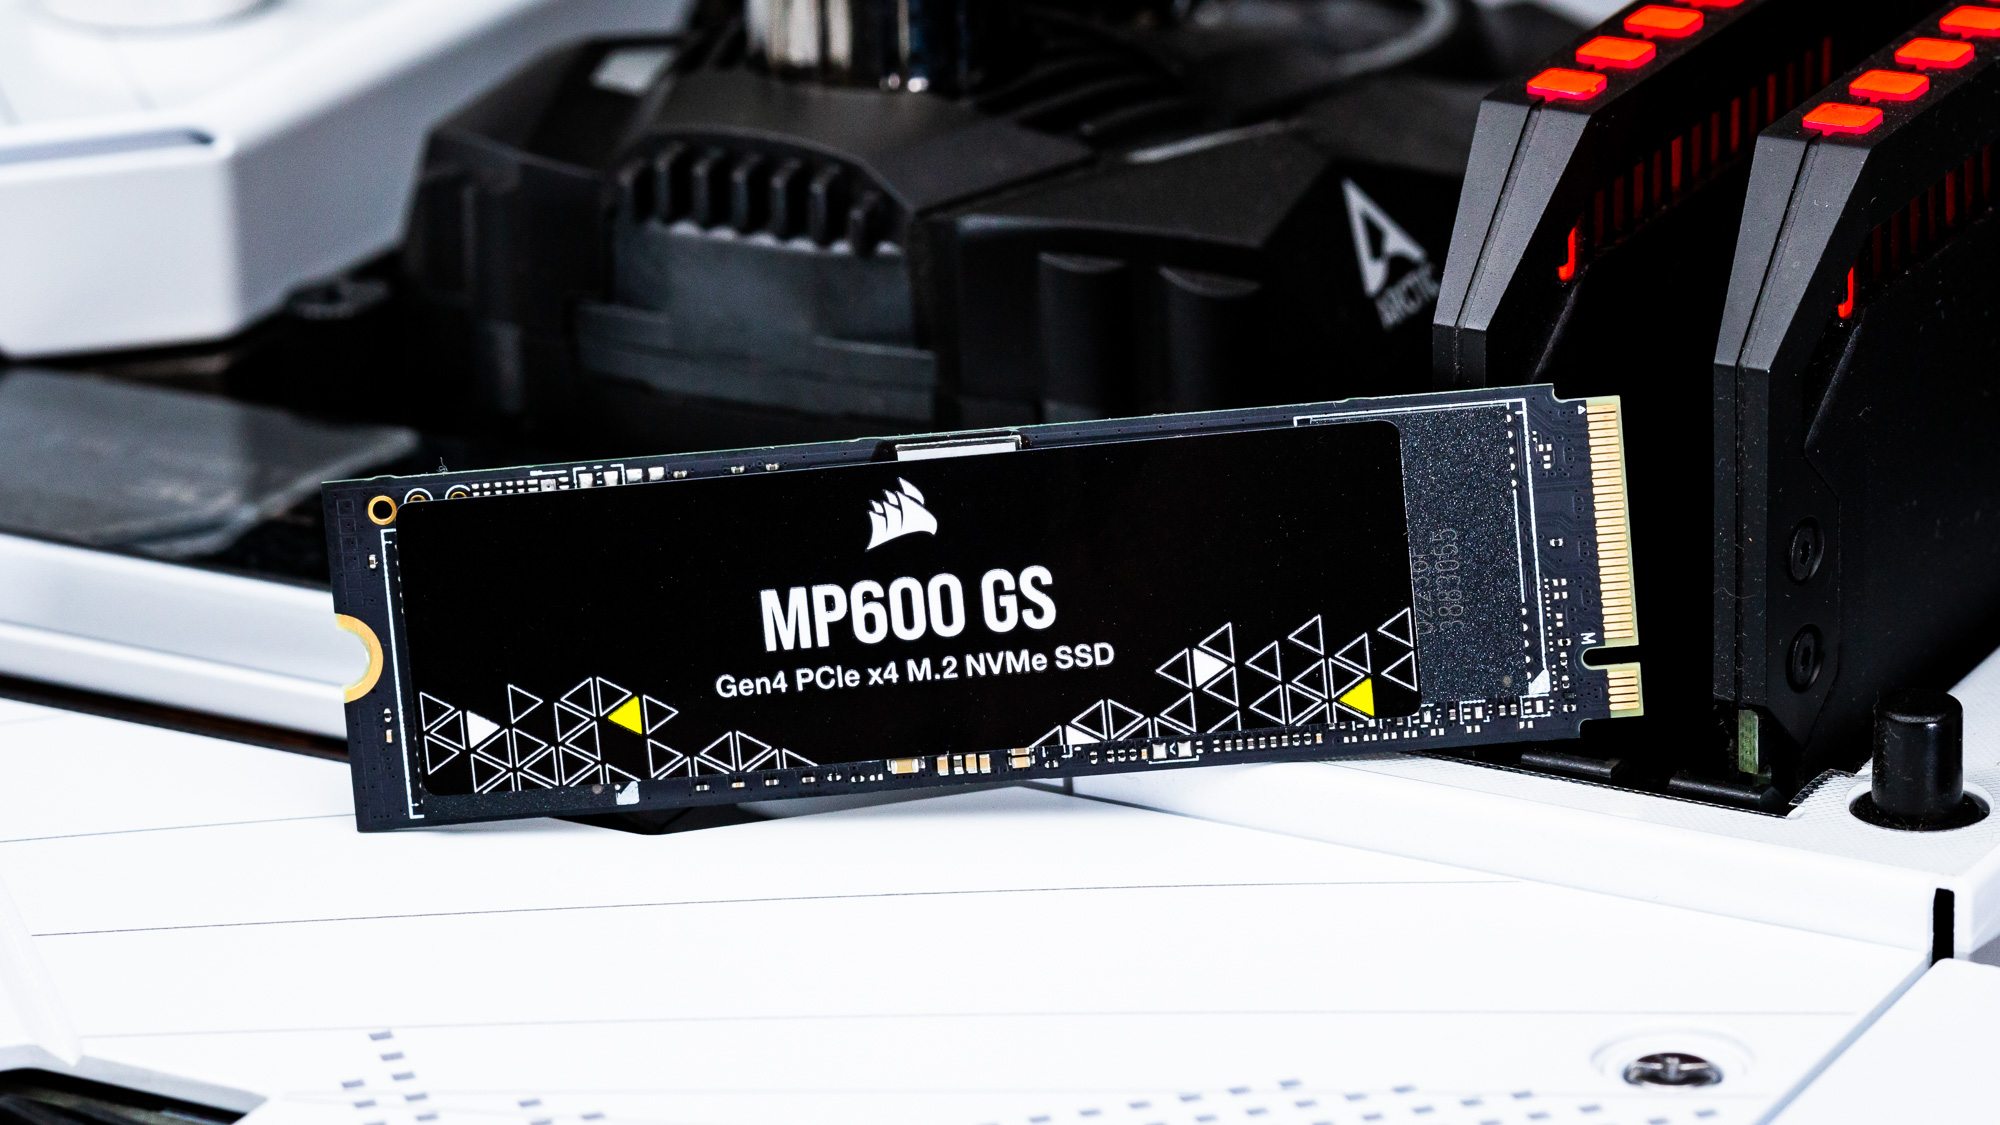 MP600 GS 2TB PCIe 4.0 (Gen 4) x4 NVMe M.2 SSD